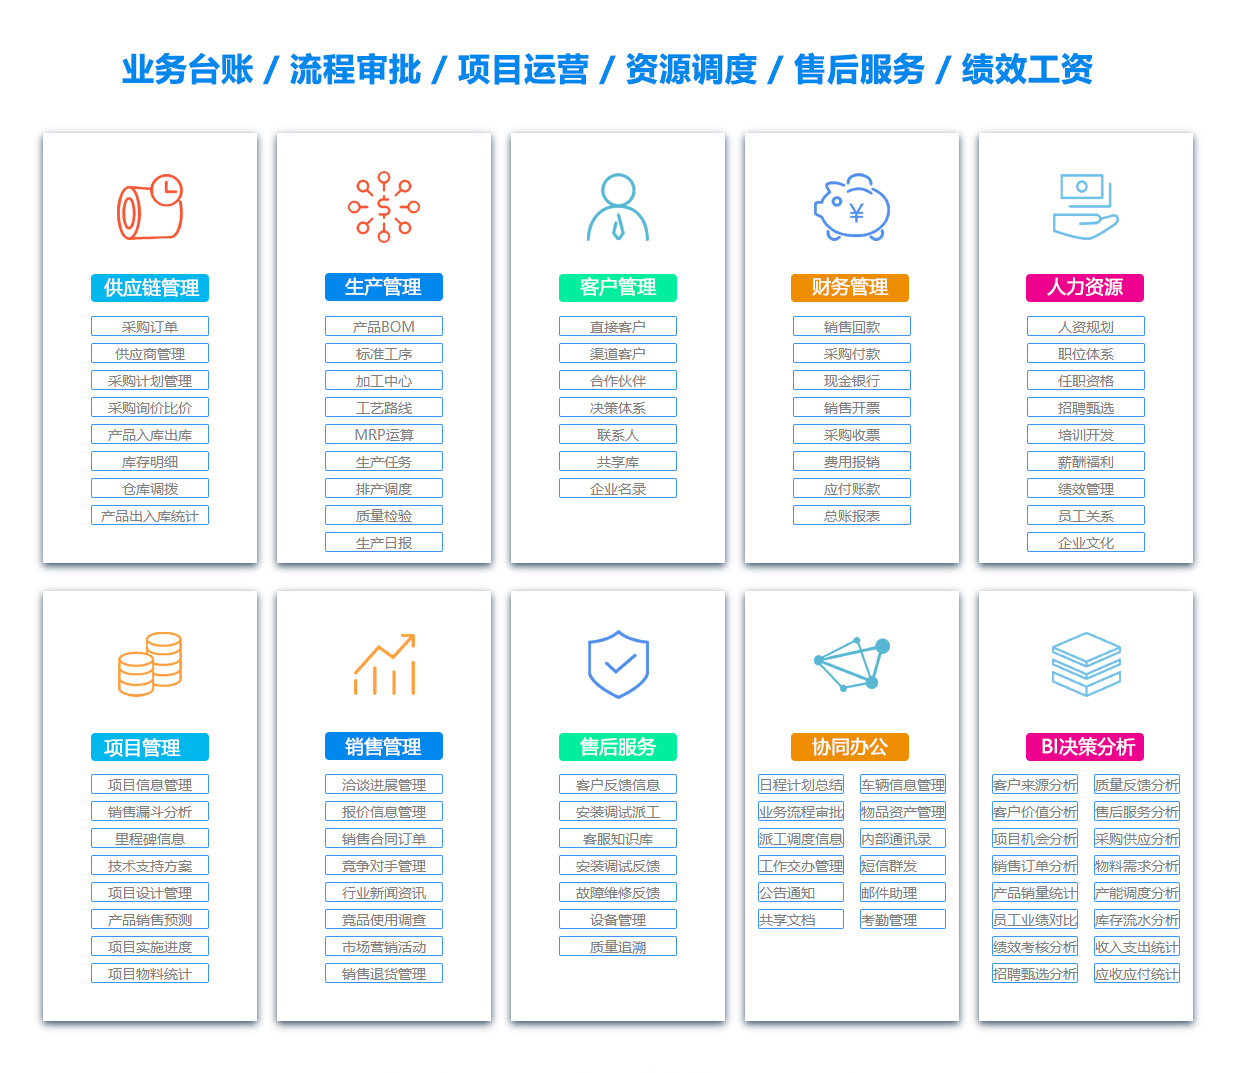 渭南BOM:物料清单软件